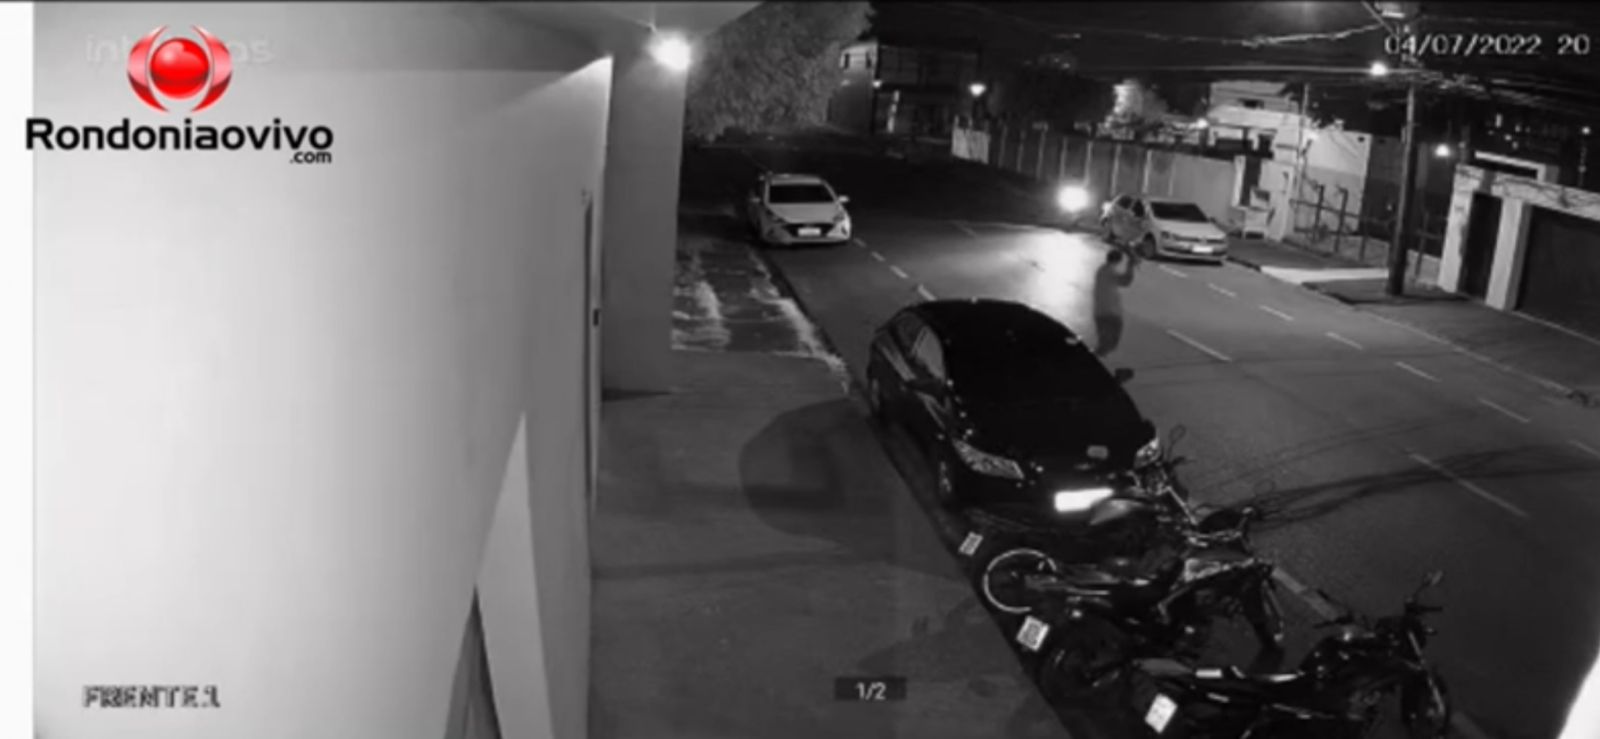 VÍDEO: Bandido é filmado furtando motocicleta na frente de emissora de TV